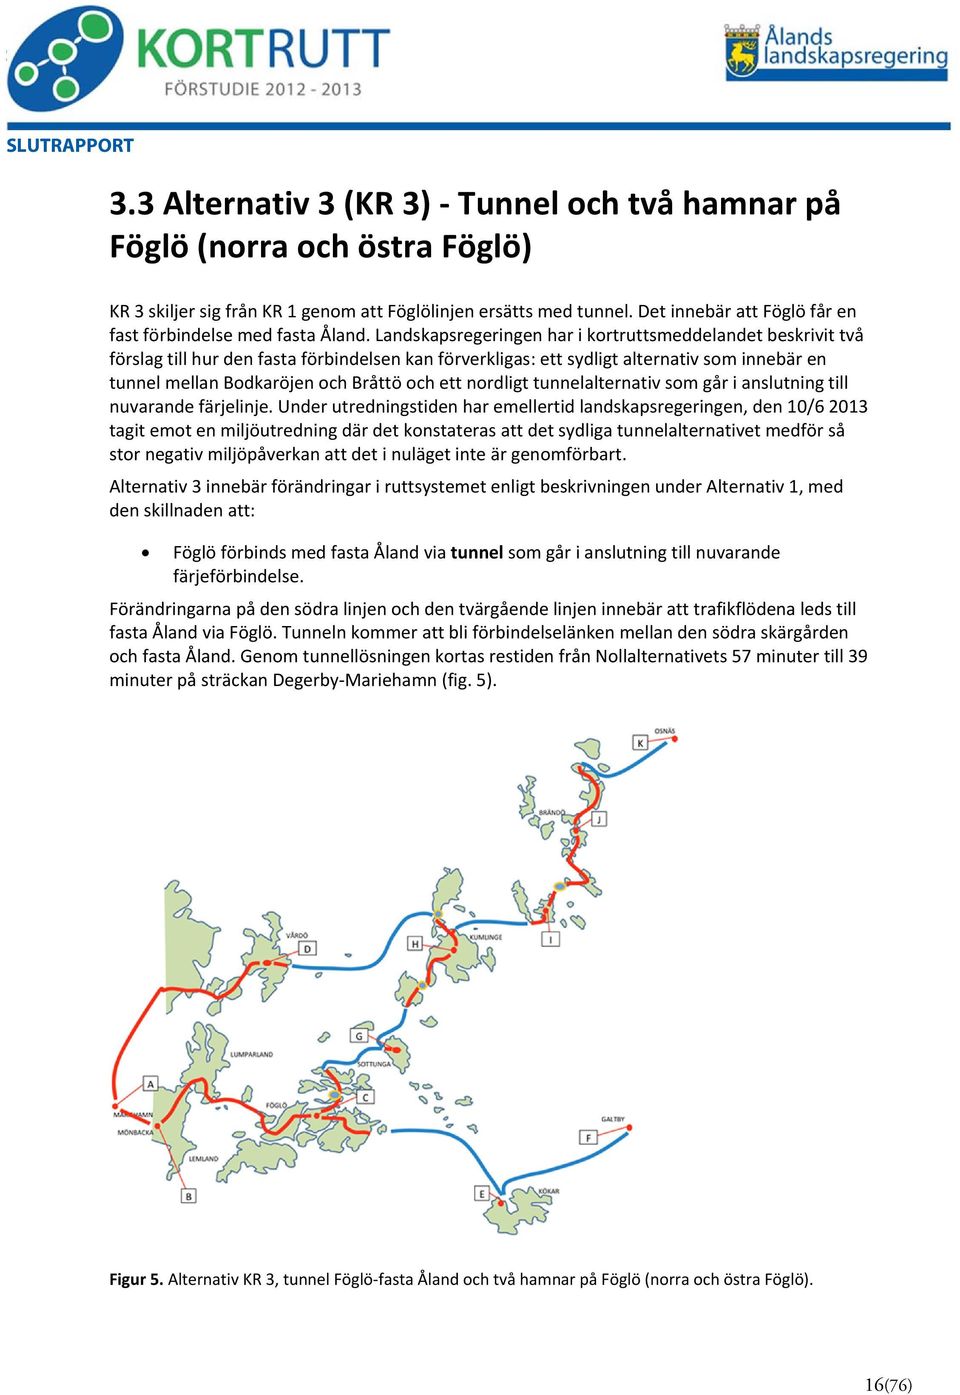 Landskapsregeringen har i kortruttsmeddelandet beskrivit två förslag till hur den fasta förbindelsen kan förverkligas: ett sydligt alternativ som innebär en tunnel mellan Bodkaröjen och Bråttö och